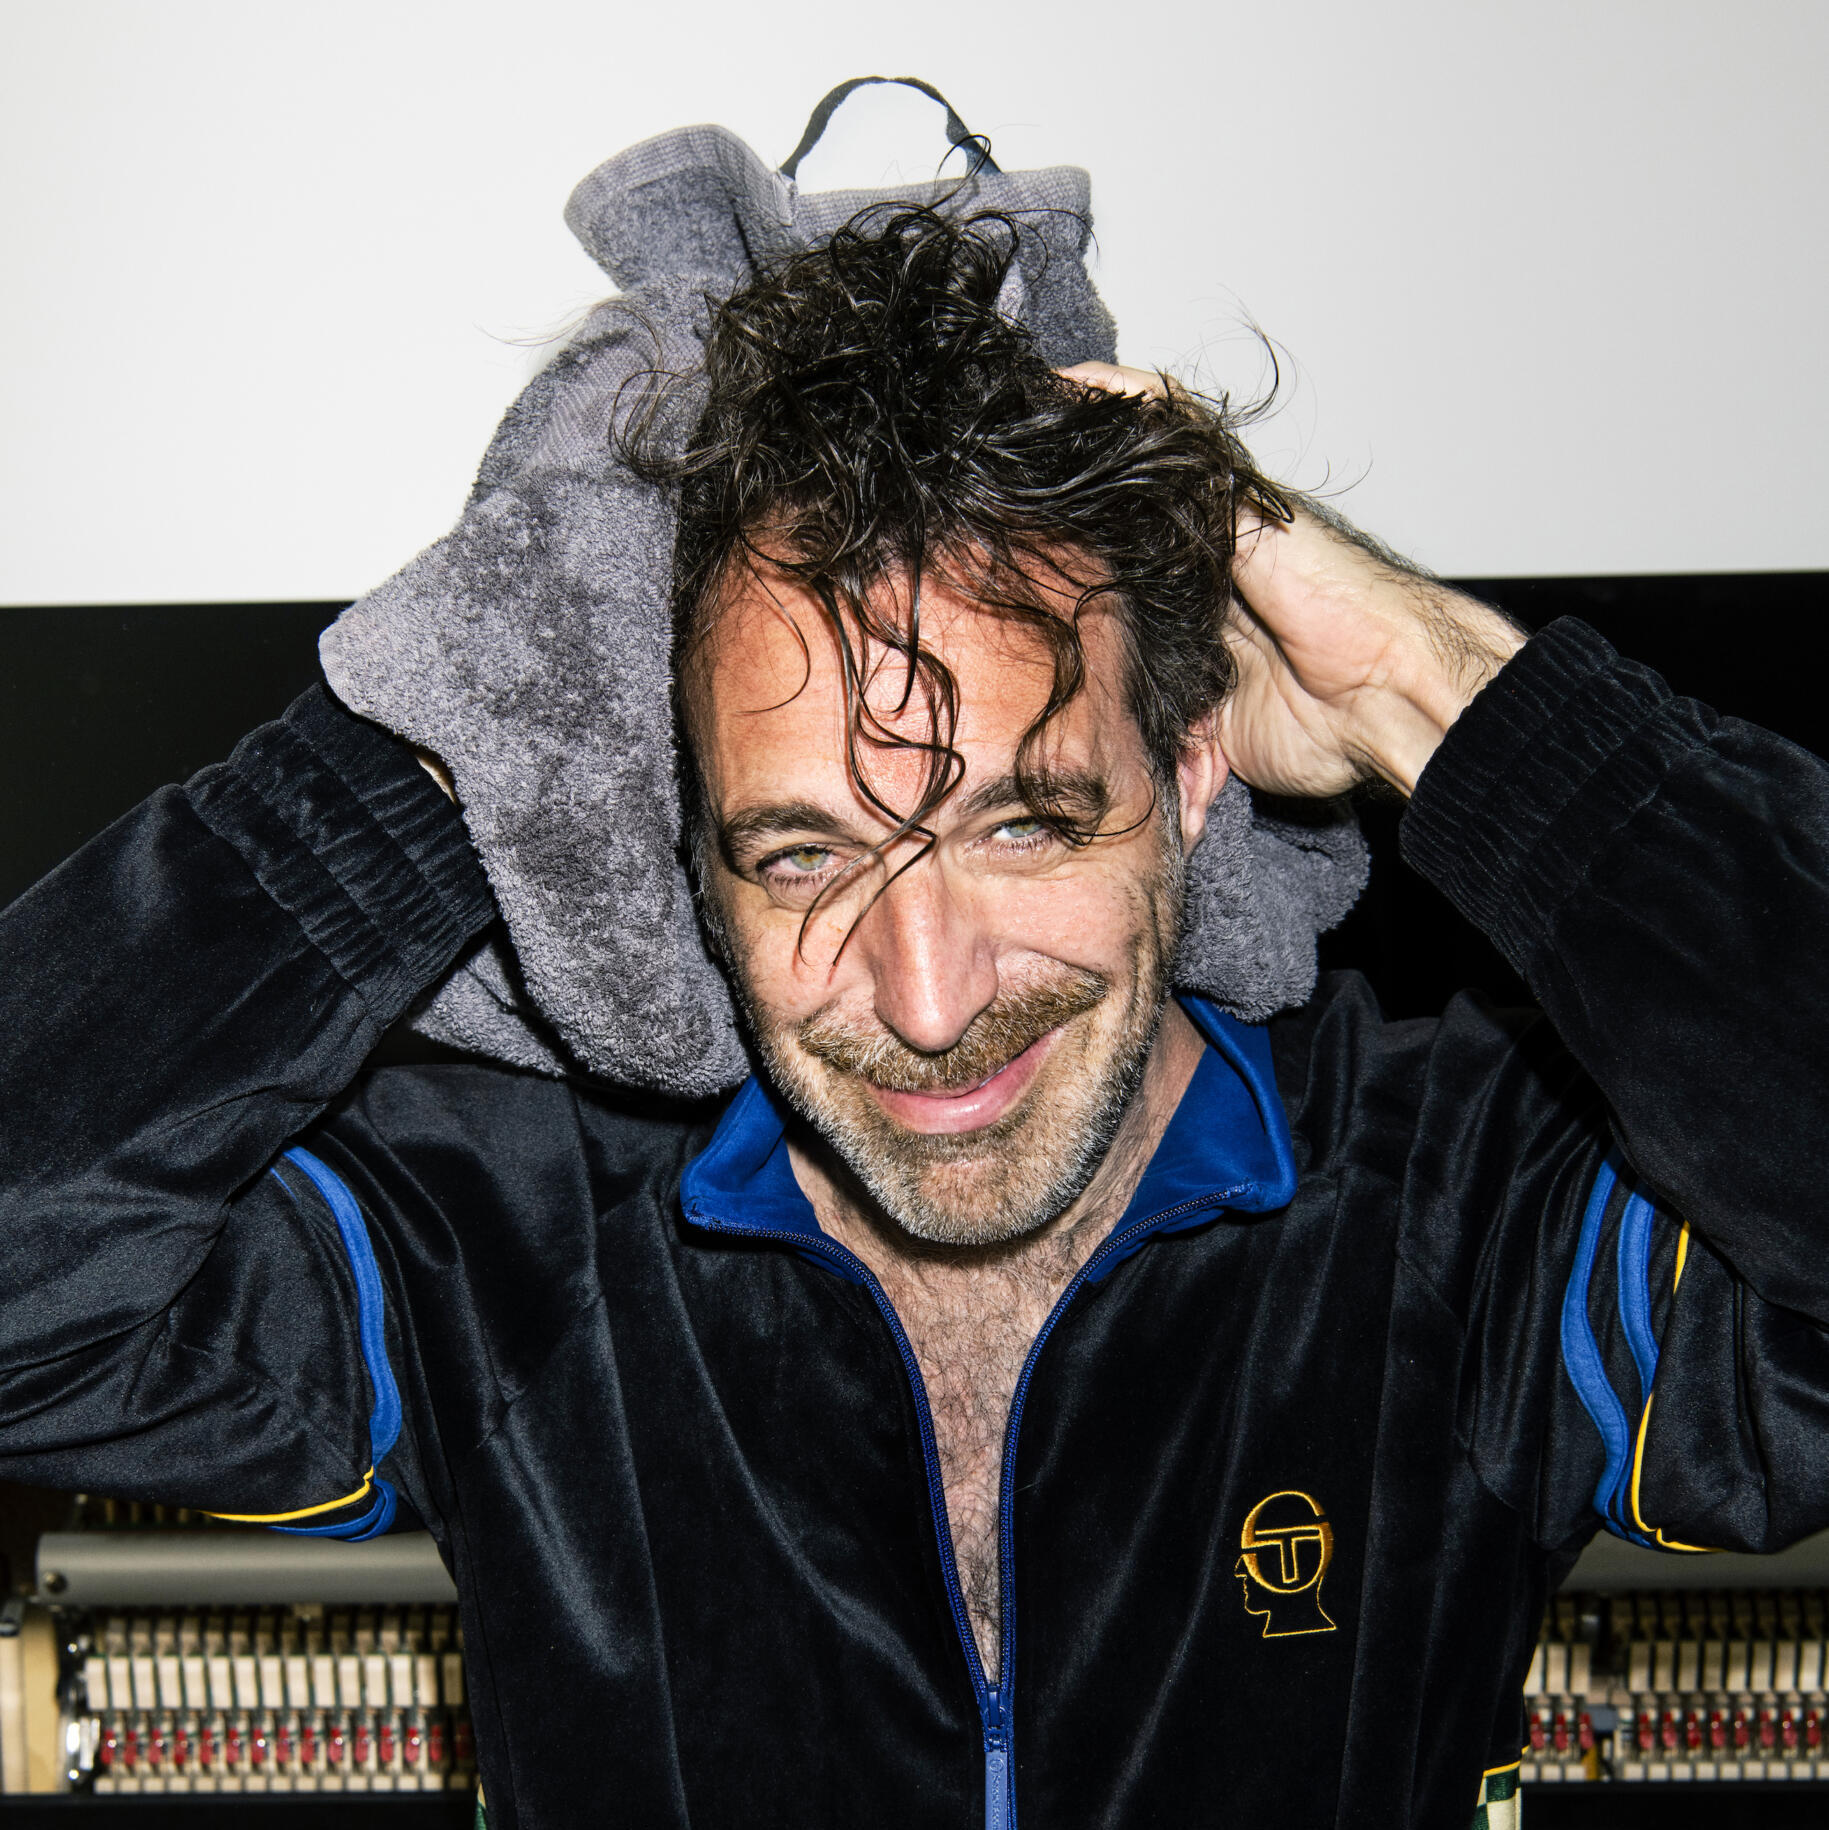 Ein Porträt des Musikers und Kabarettisten Chilly Gonzales. Er trägt einen Trainingsanzug aus Samt, sitzt vor einem Klavier und rubbelt sich mit einem Handtuch die lockigen Haare trocken.